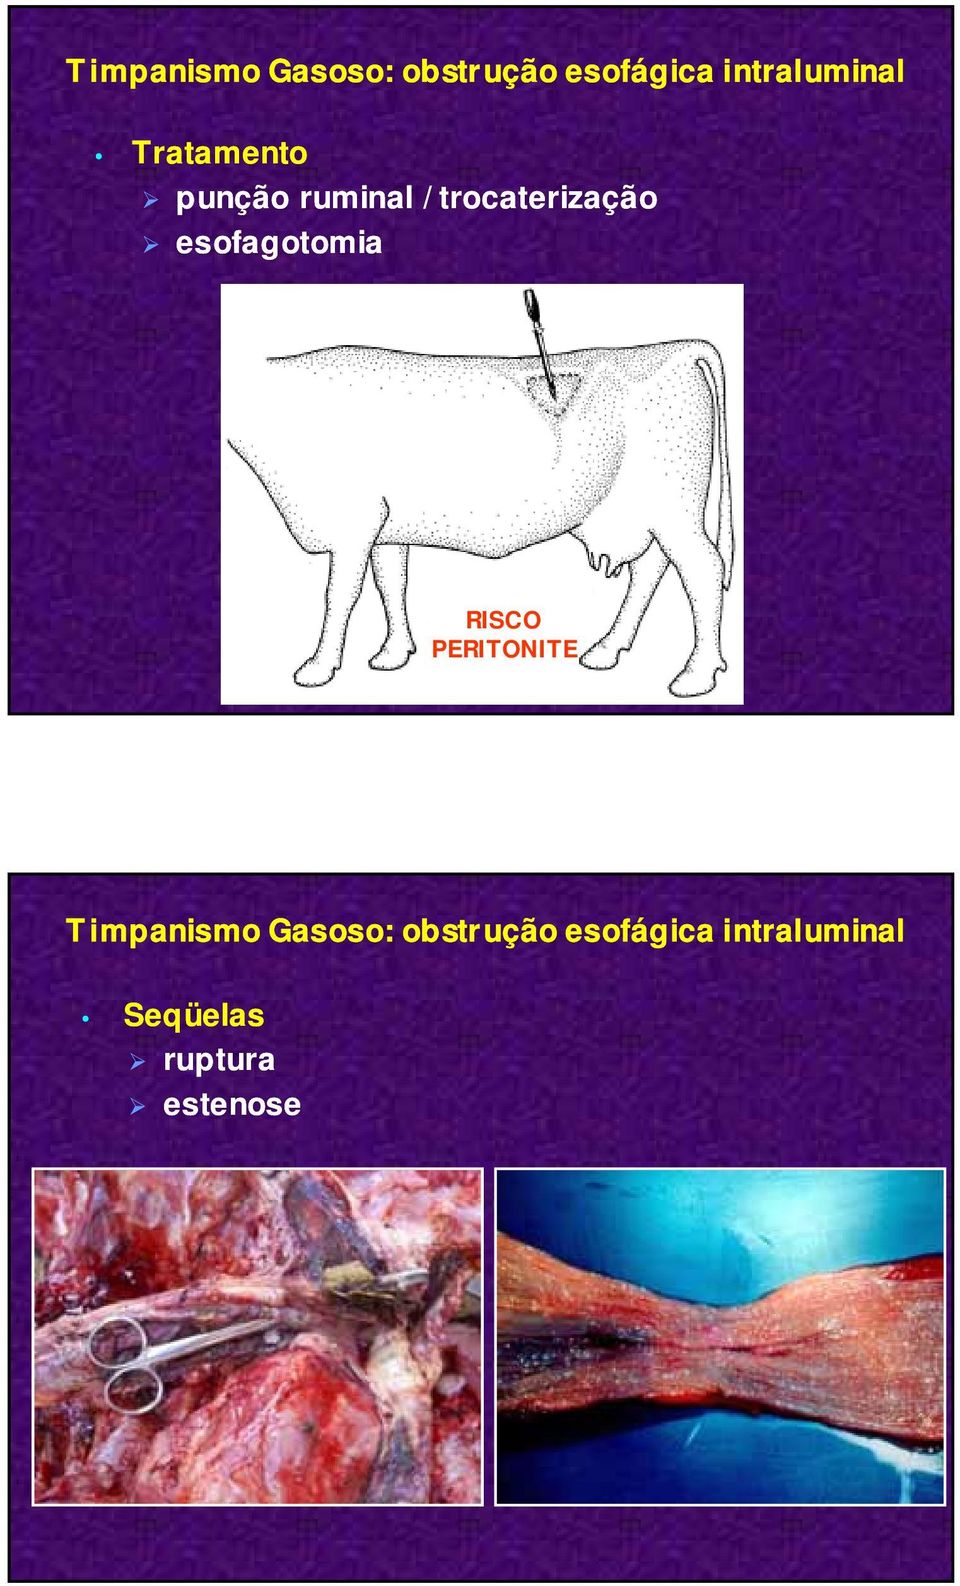 trocaterização esofagotomia RISCO PERITONITE 